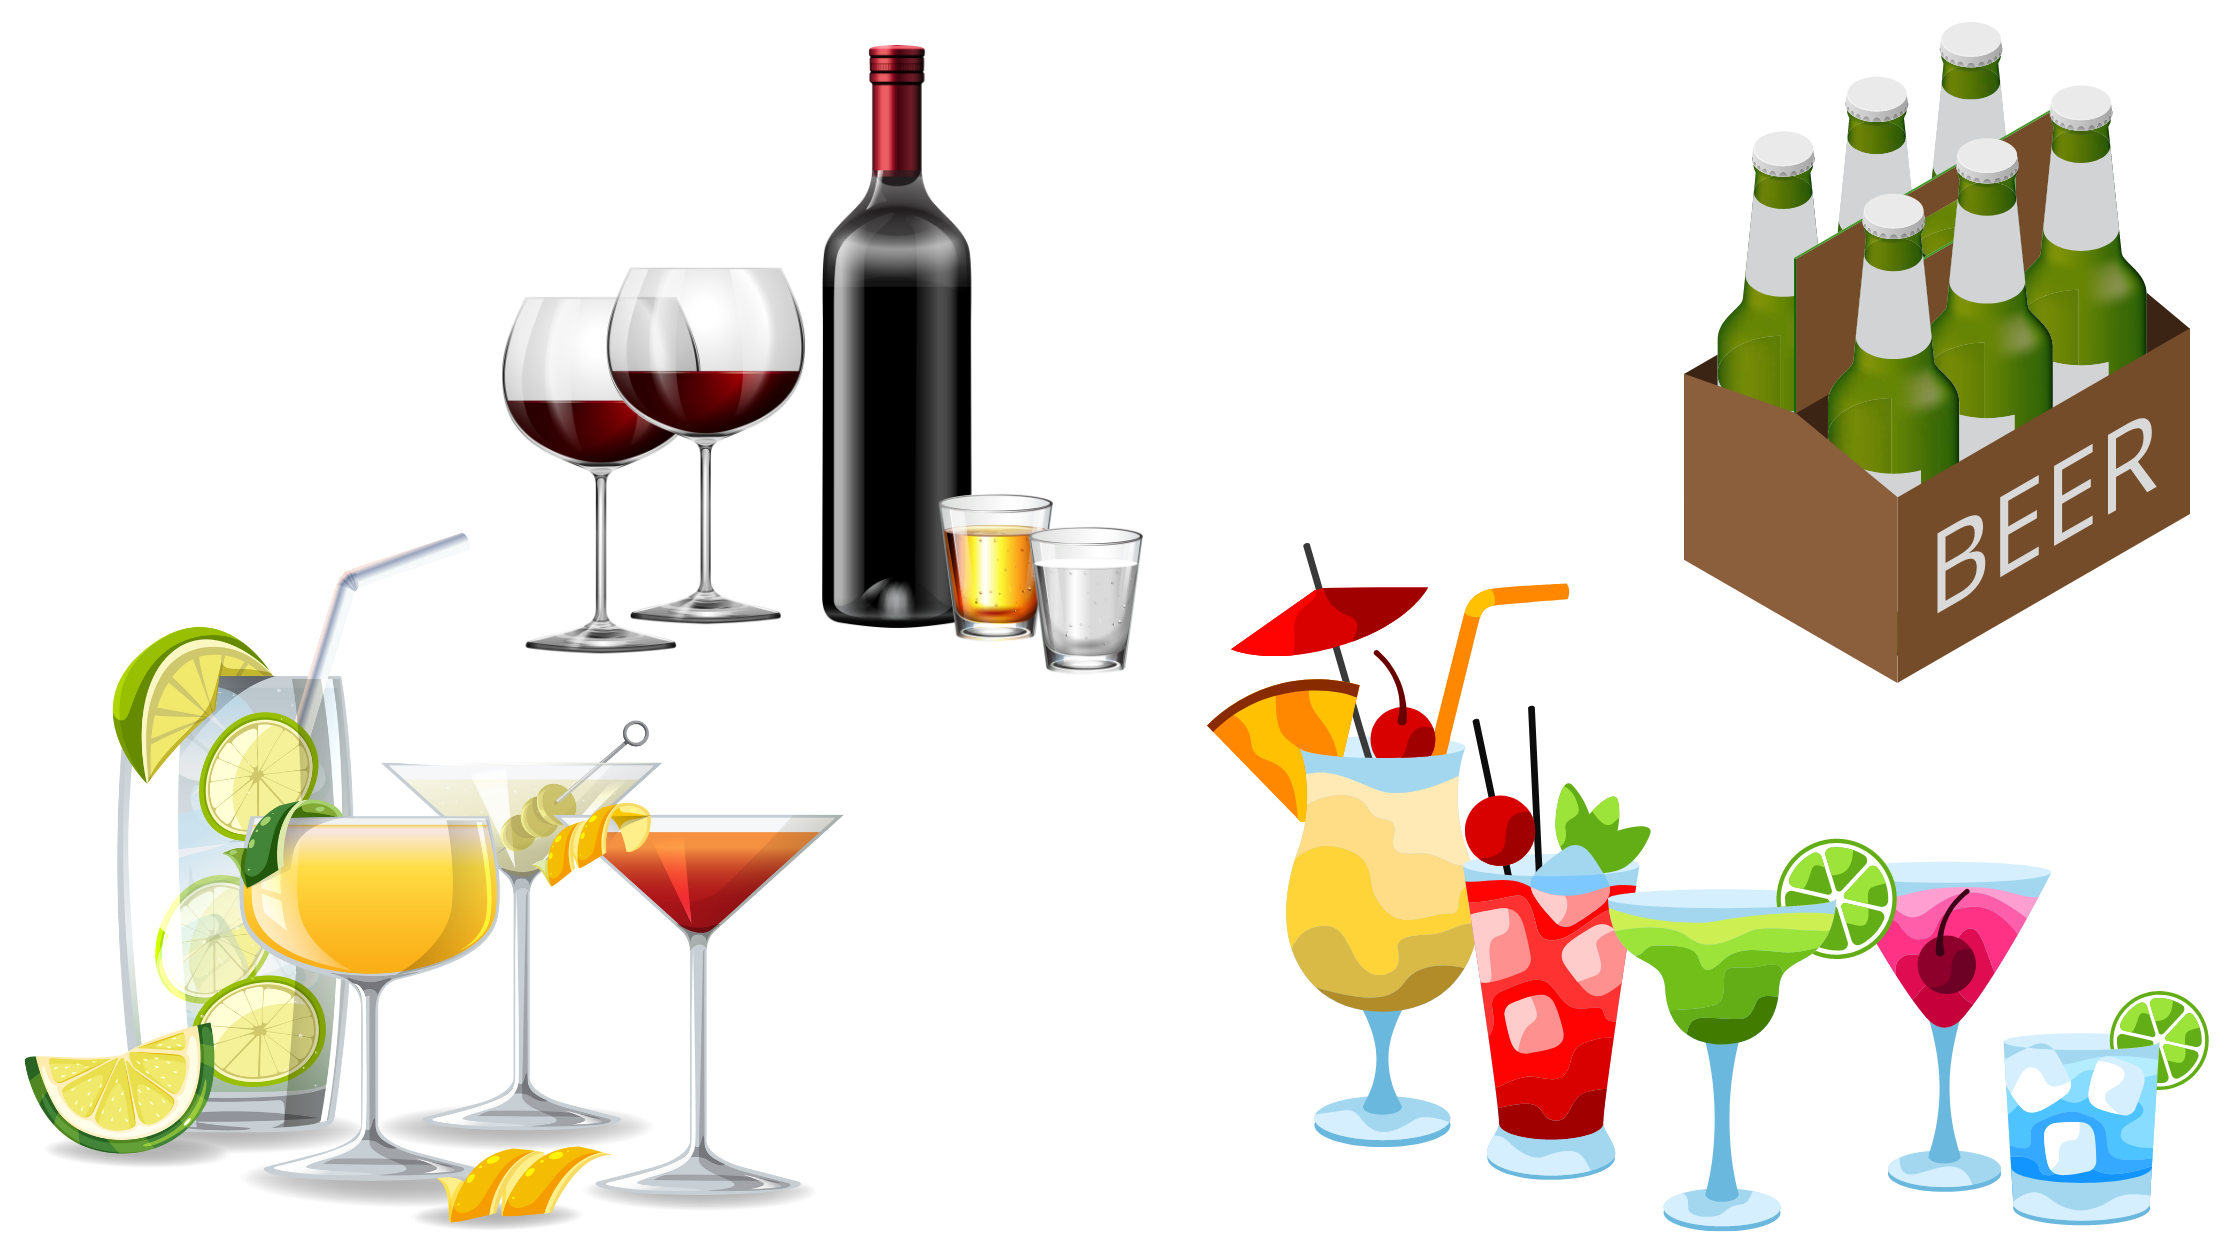 esempi di abuso di alcol come cause di encefalopatia, come il vino rosso e bianco, birra, superalcolici